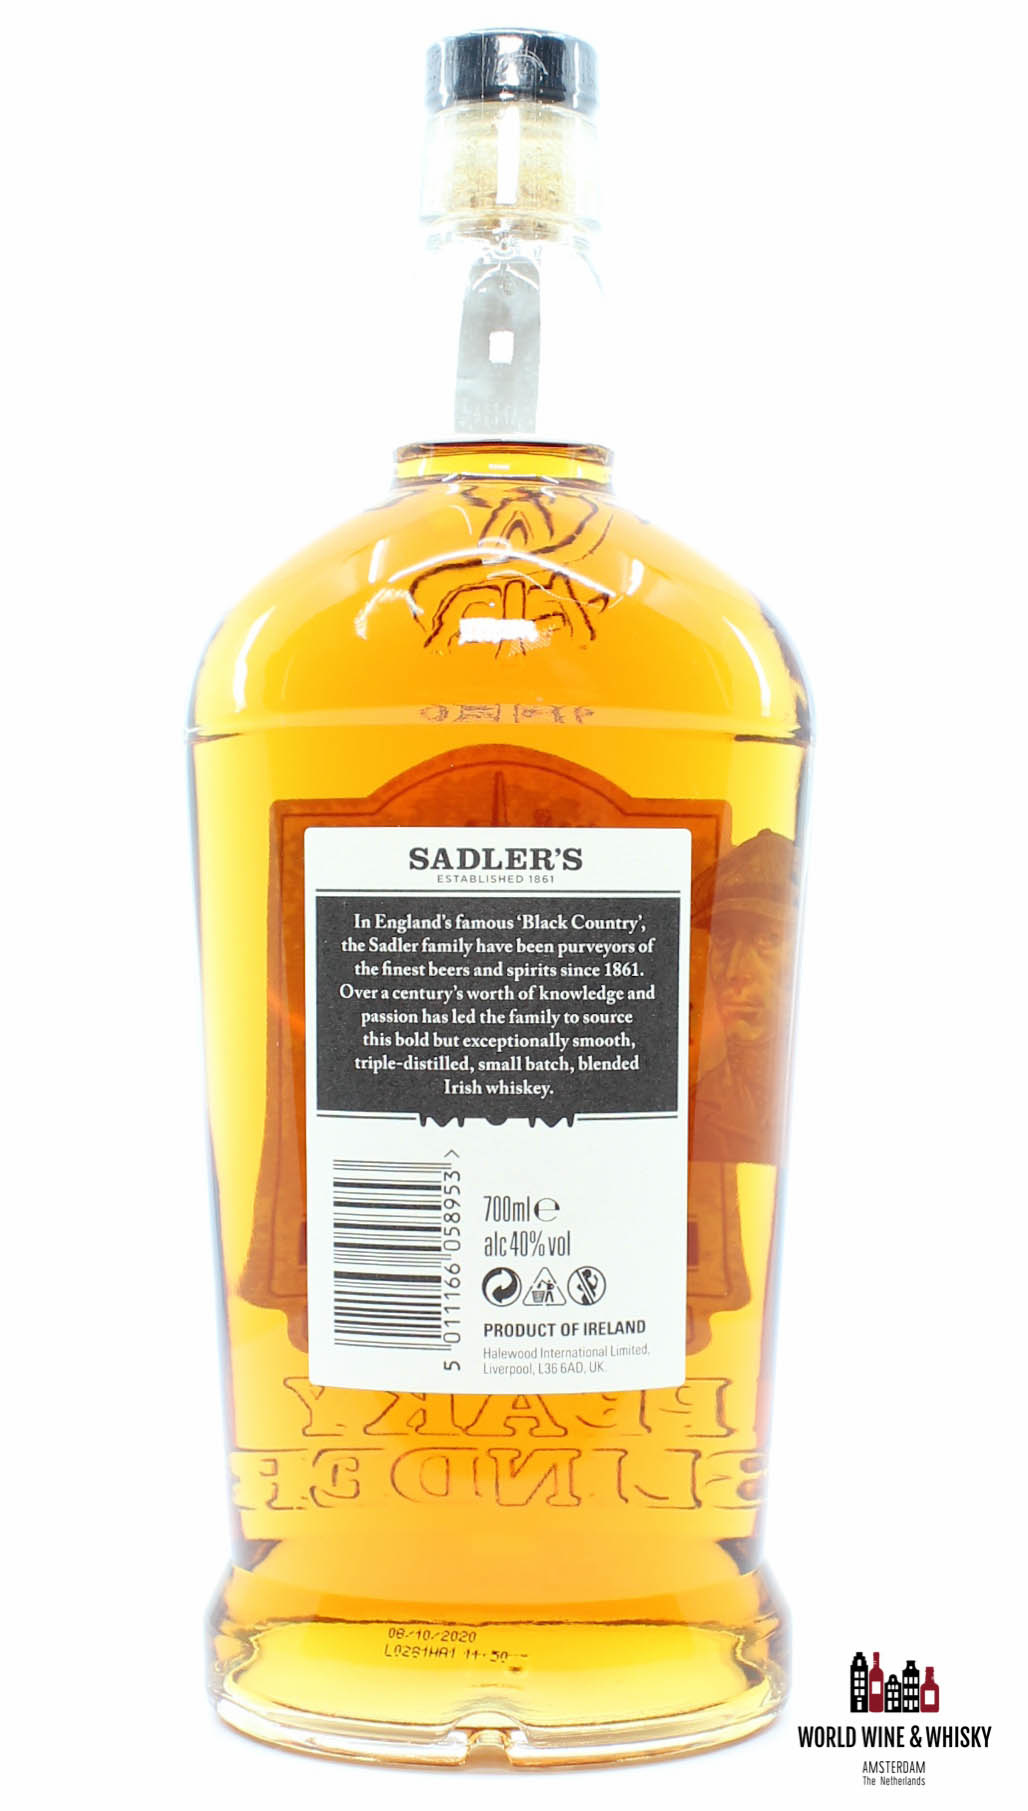 Peaky Blinder Irish Whiskey 2017 - Sadler\'s Brewing Co. 40% - World Wine &  Whisky